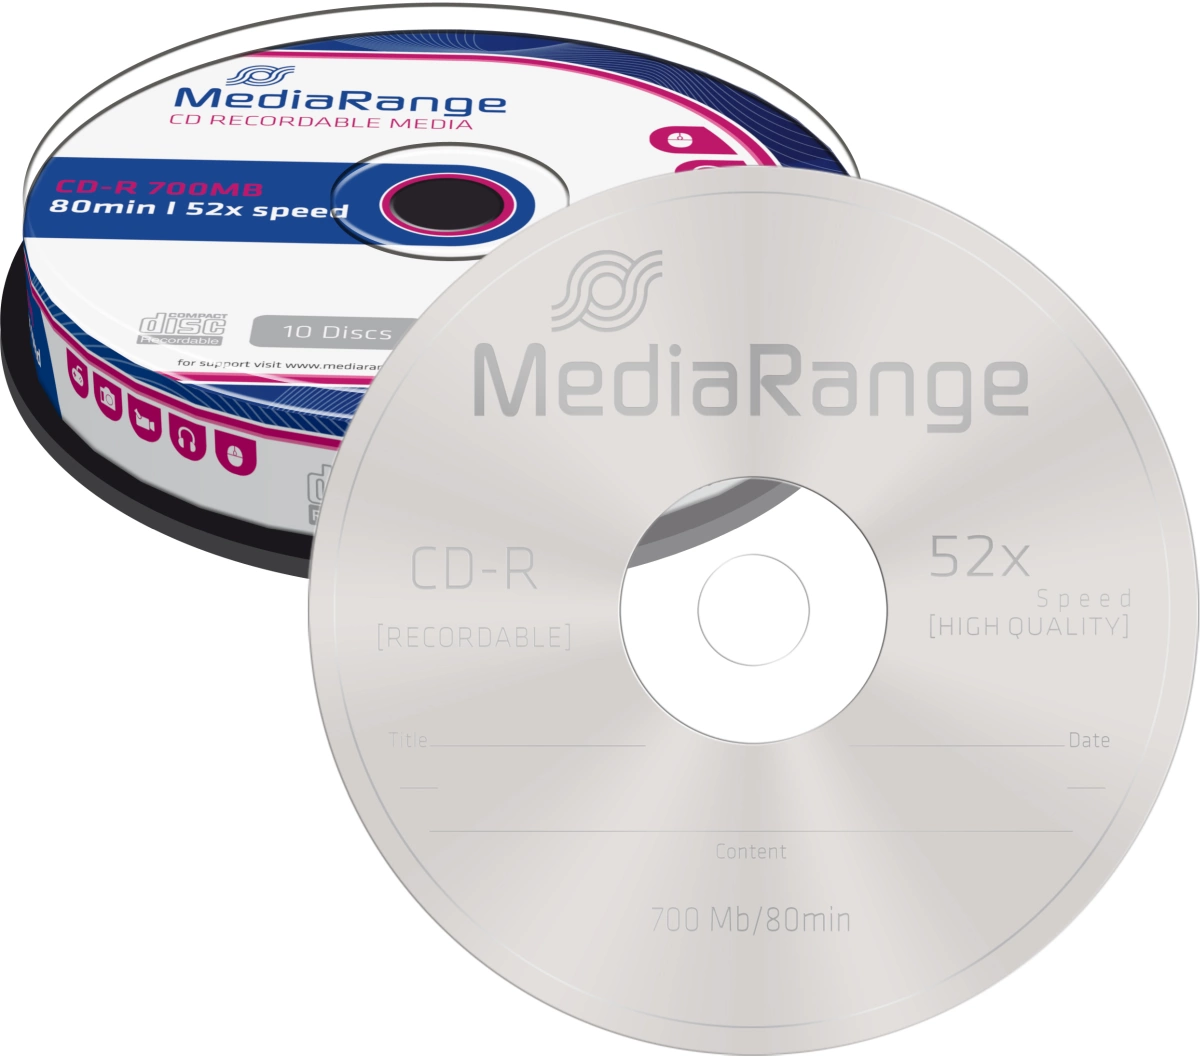 CD-R Rohlinge - 700MB/80Min, 52-fach/Spindel, Packung mit 10 Stück